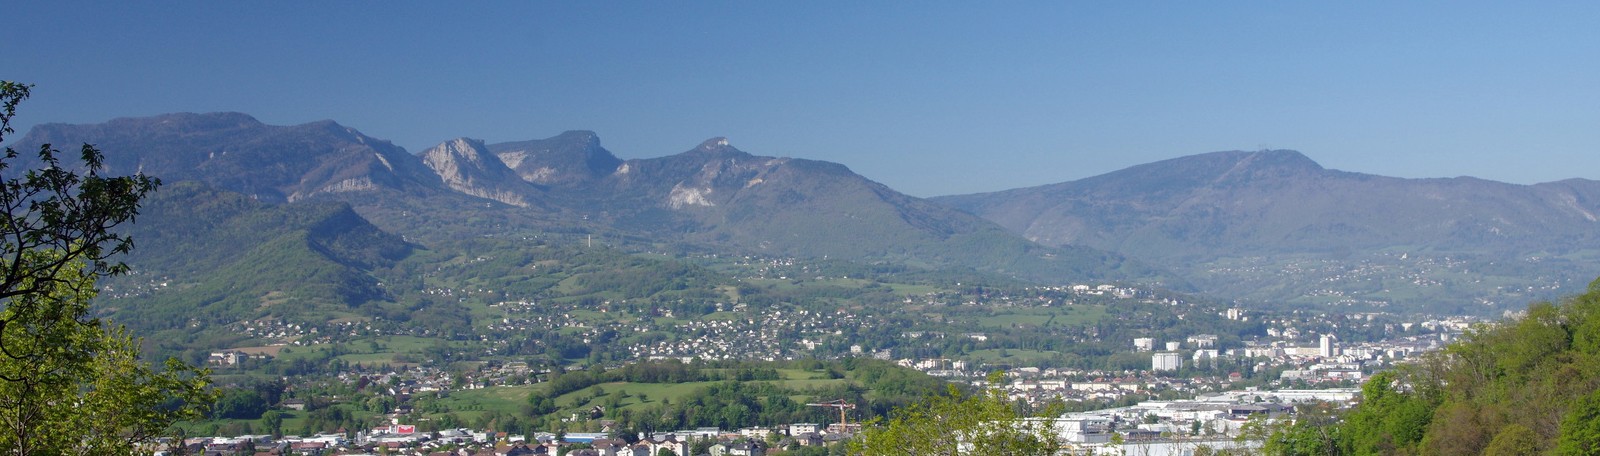 Wat te doen deze zomer in Chambéry of Grenoble, nabij de Alpen?